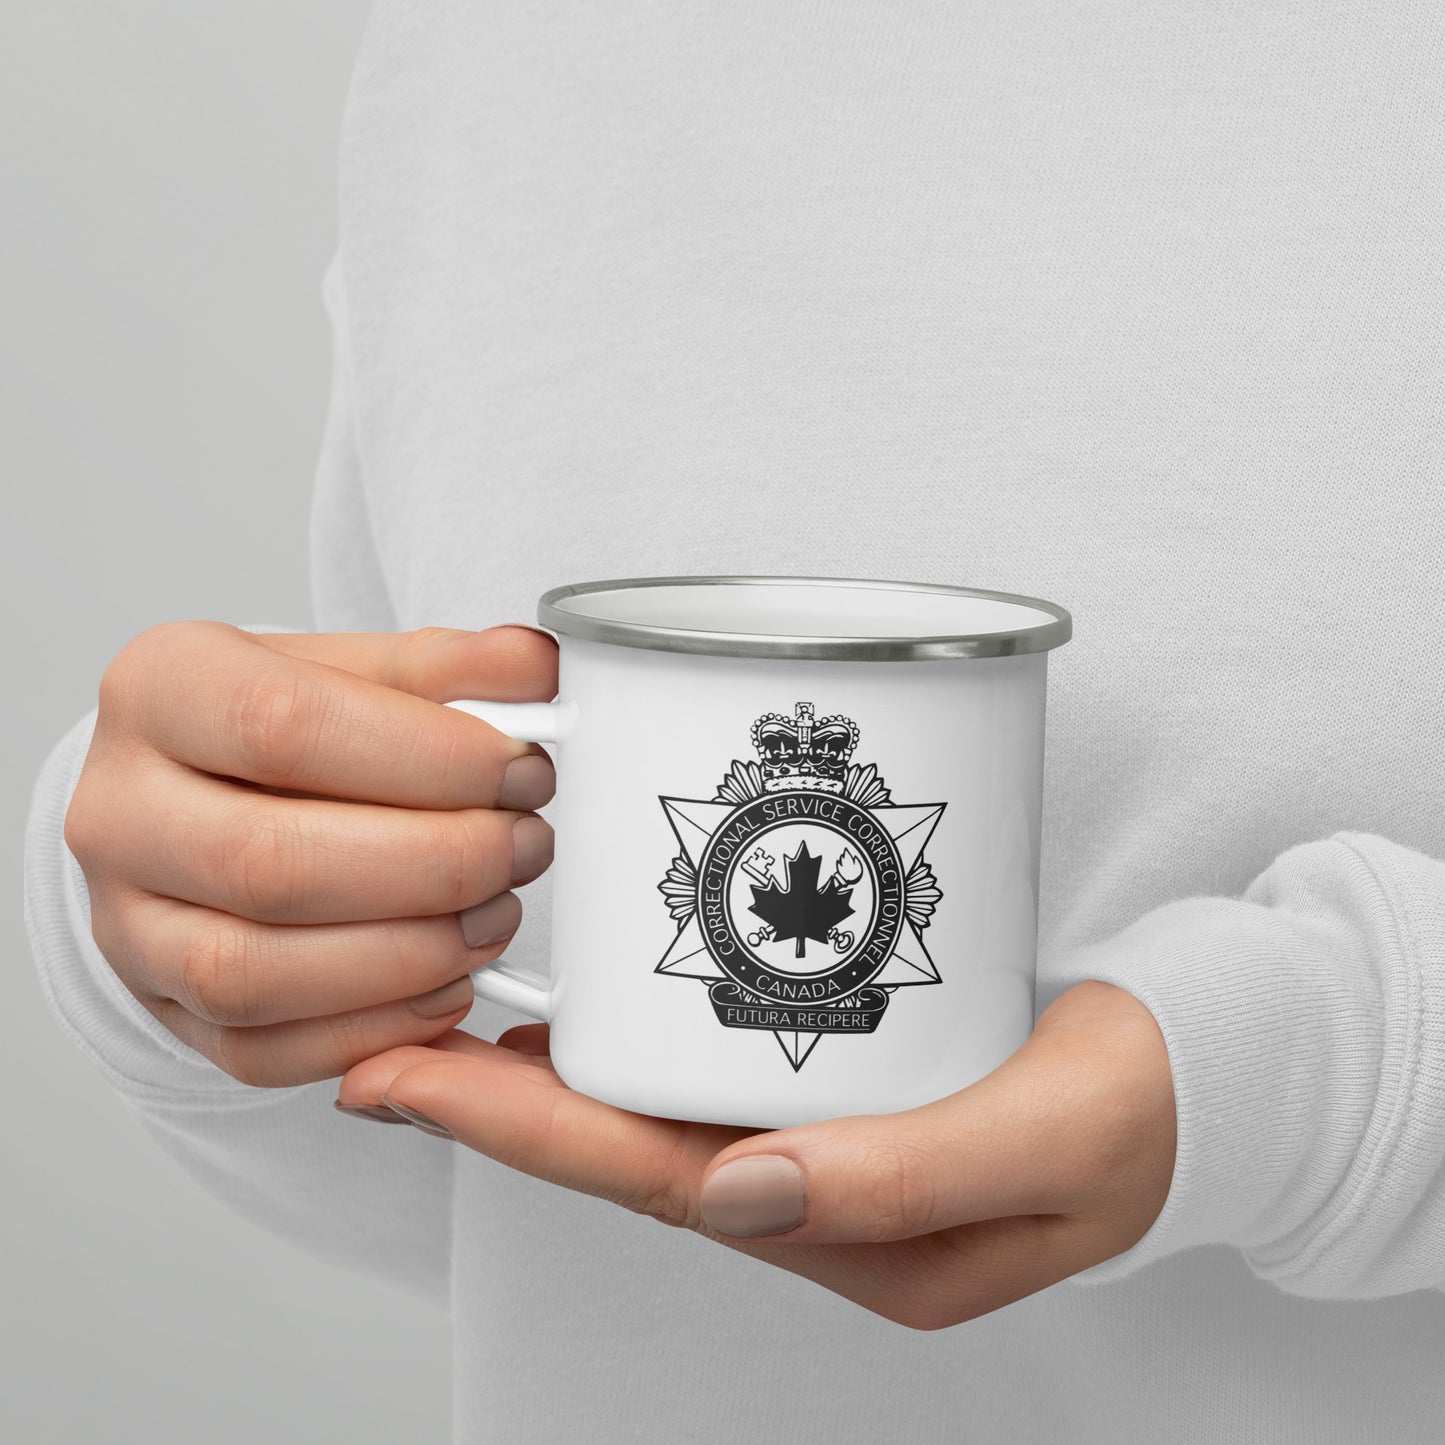 Correctional Services Canada (CSC) Enamel Mug